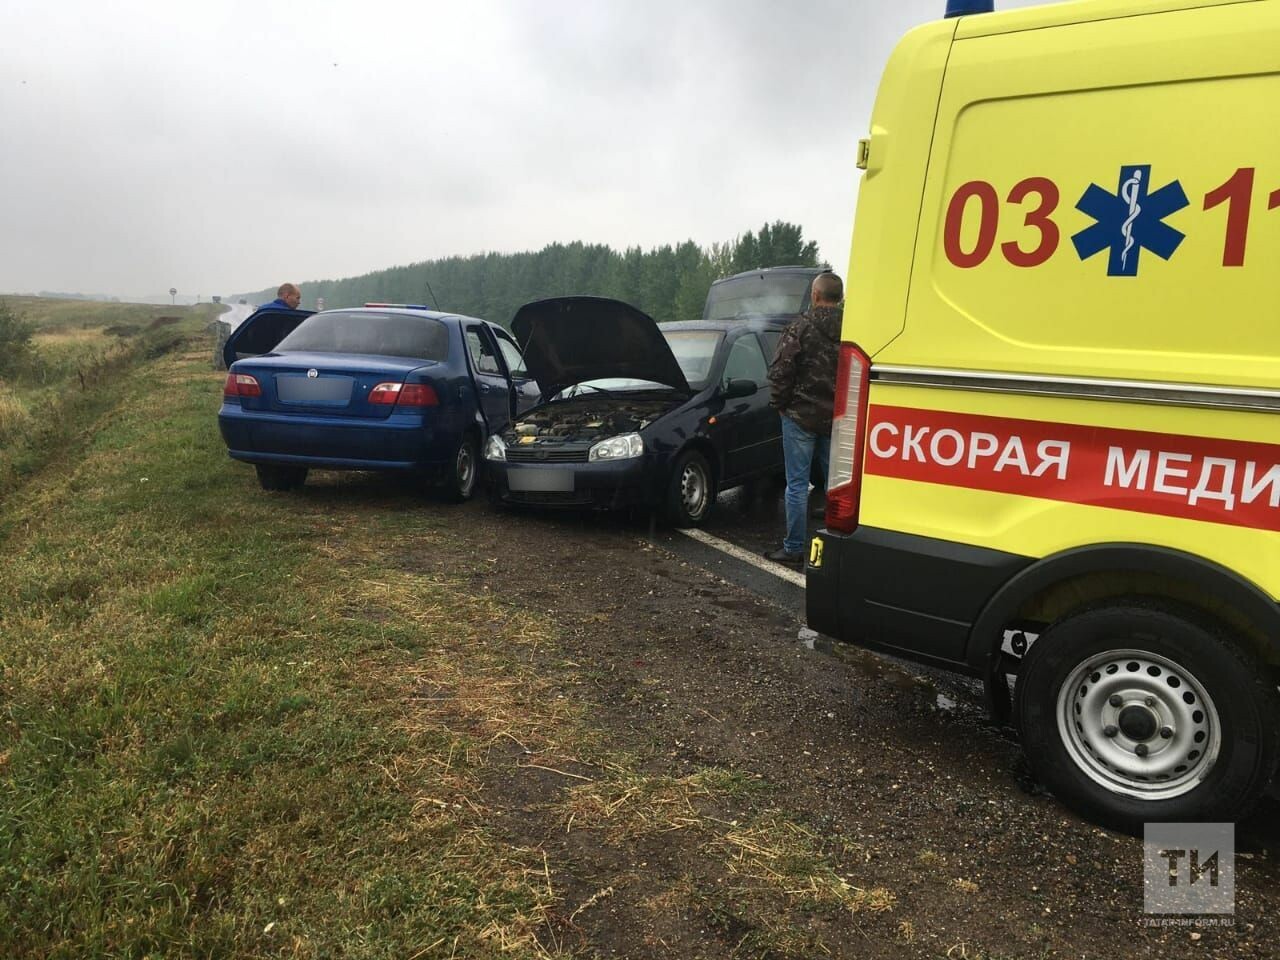 Трое пассажиров пострадали в лобовом столкновении двух легковушек в Татарстане